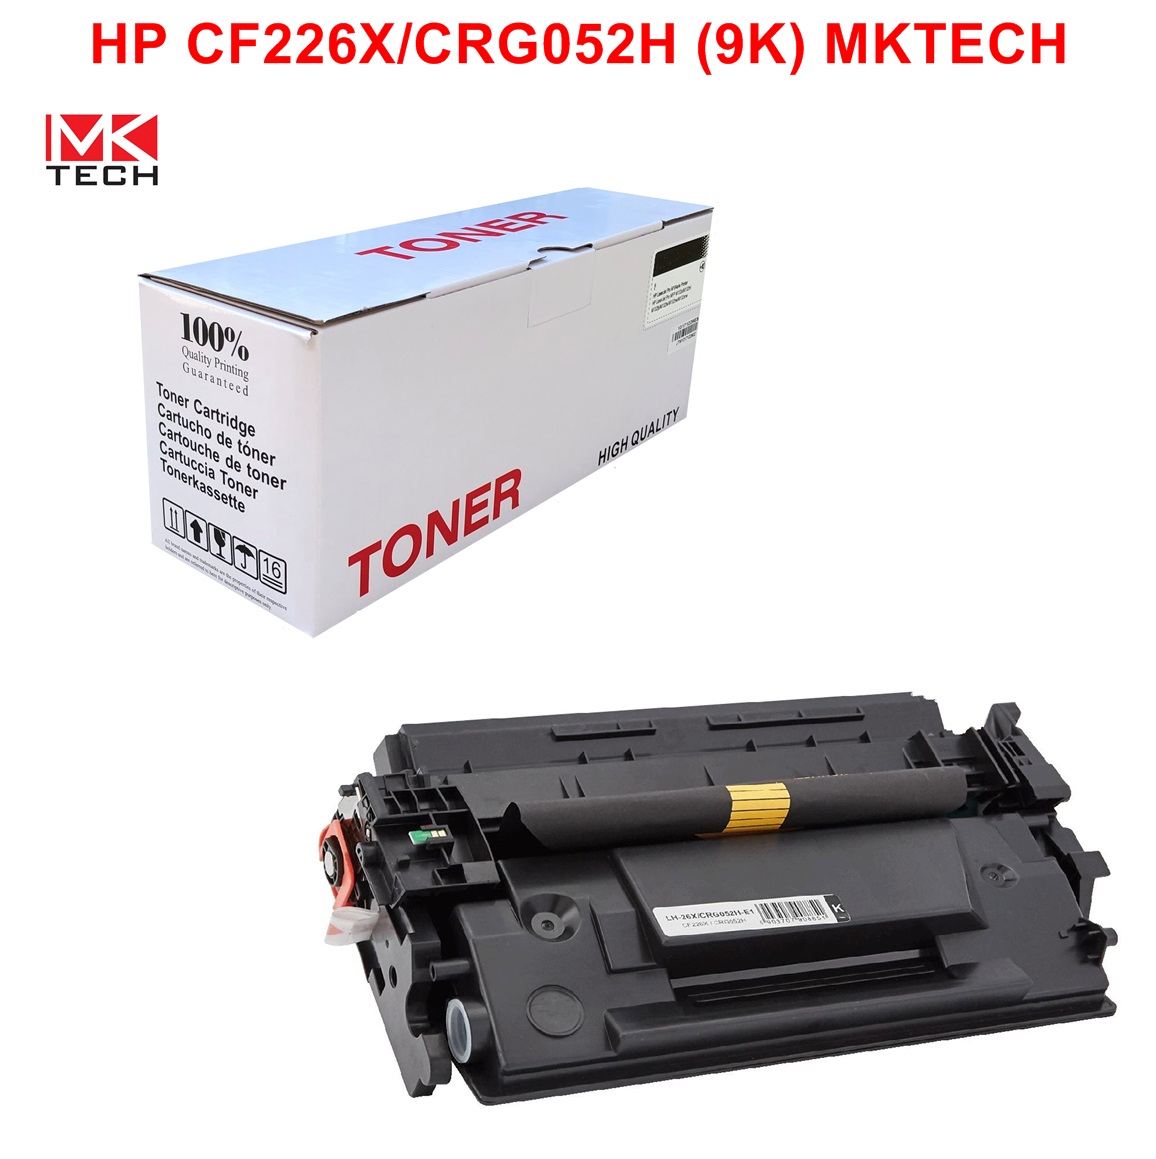 HP CF226X/CRG052H (9K) MKTECH